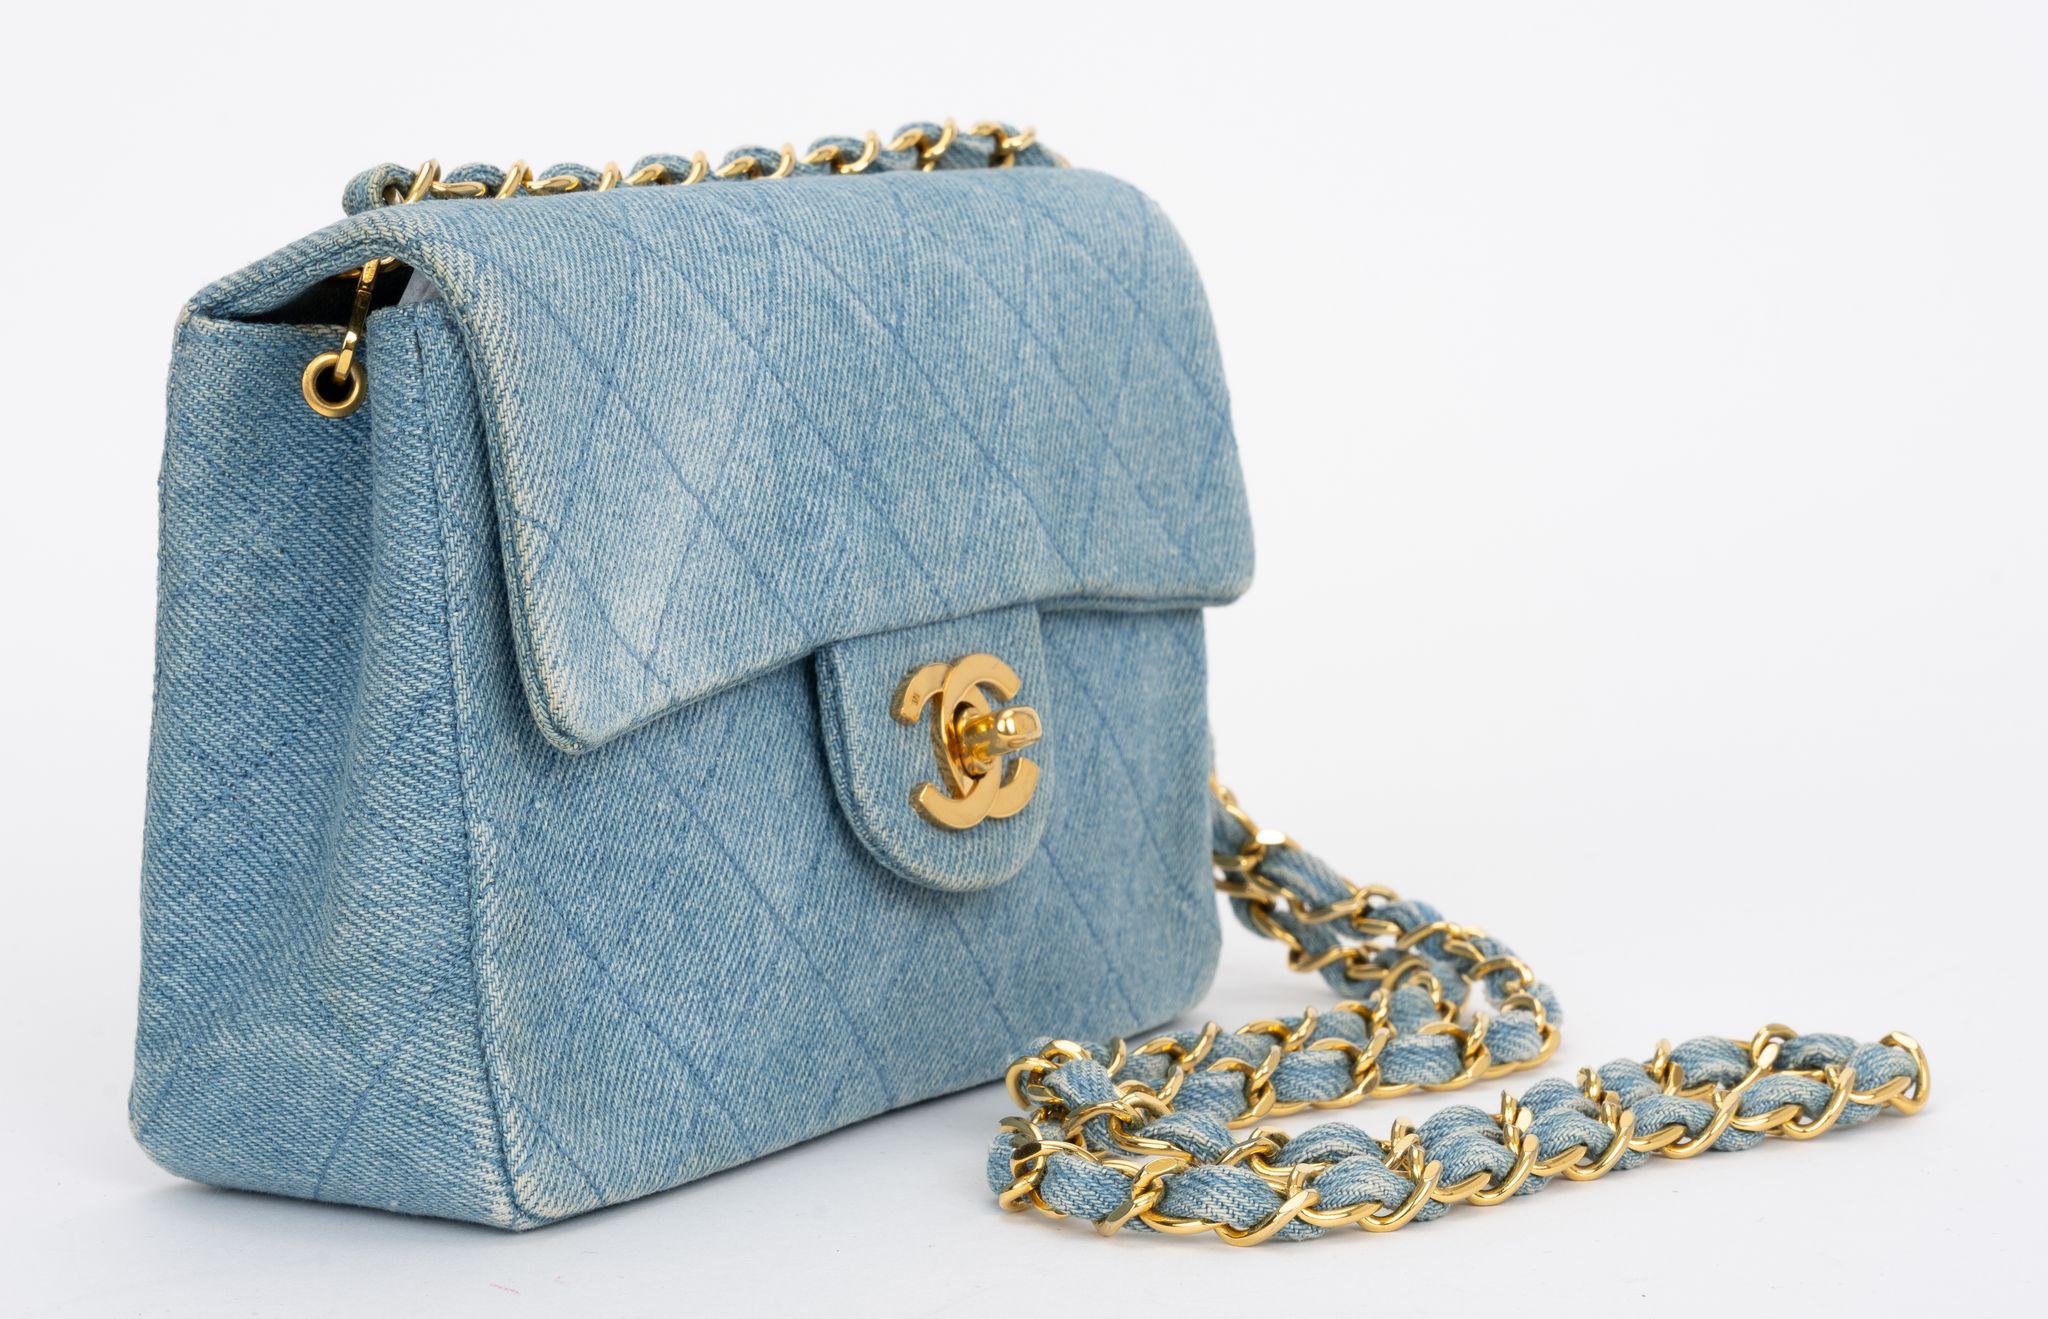 Die Chanel Denim Quilted Flap Bag besteht aus weichem Stepp-Denim und verfügt über einen Schulterriemen mit goldenen Kettengliedern und CC-Drehverschluss. Innen gibt es eine Reißverschlusstasche und aufgesetzte Taschen.
Schulterhöhe 21